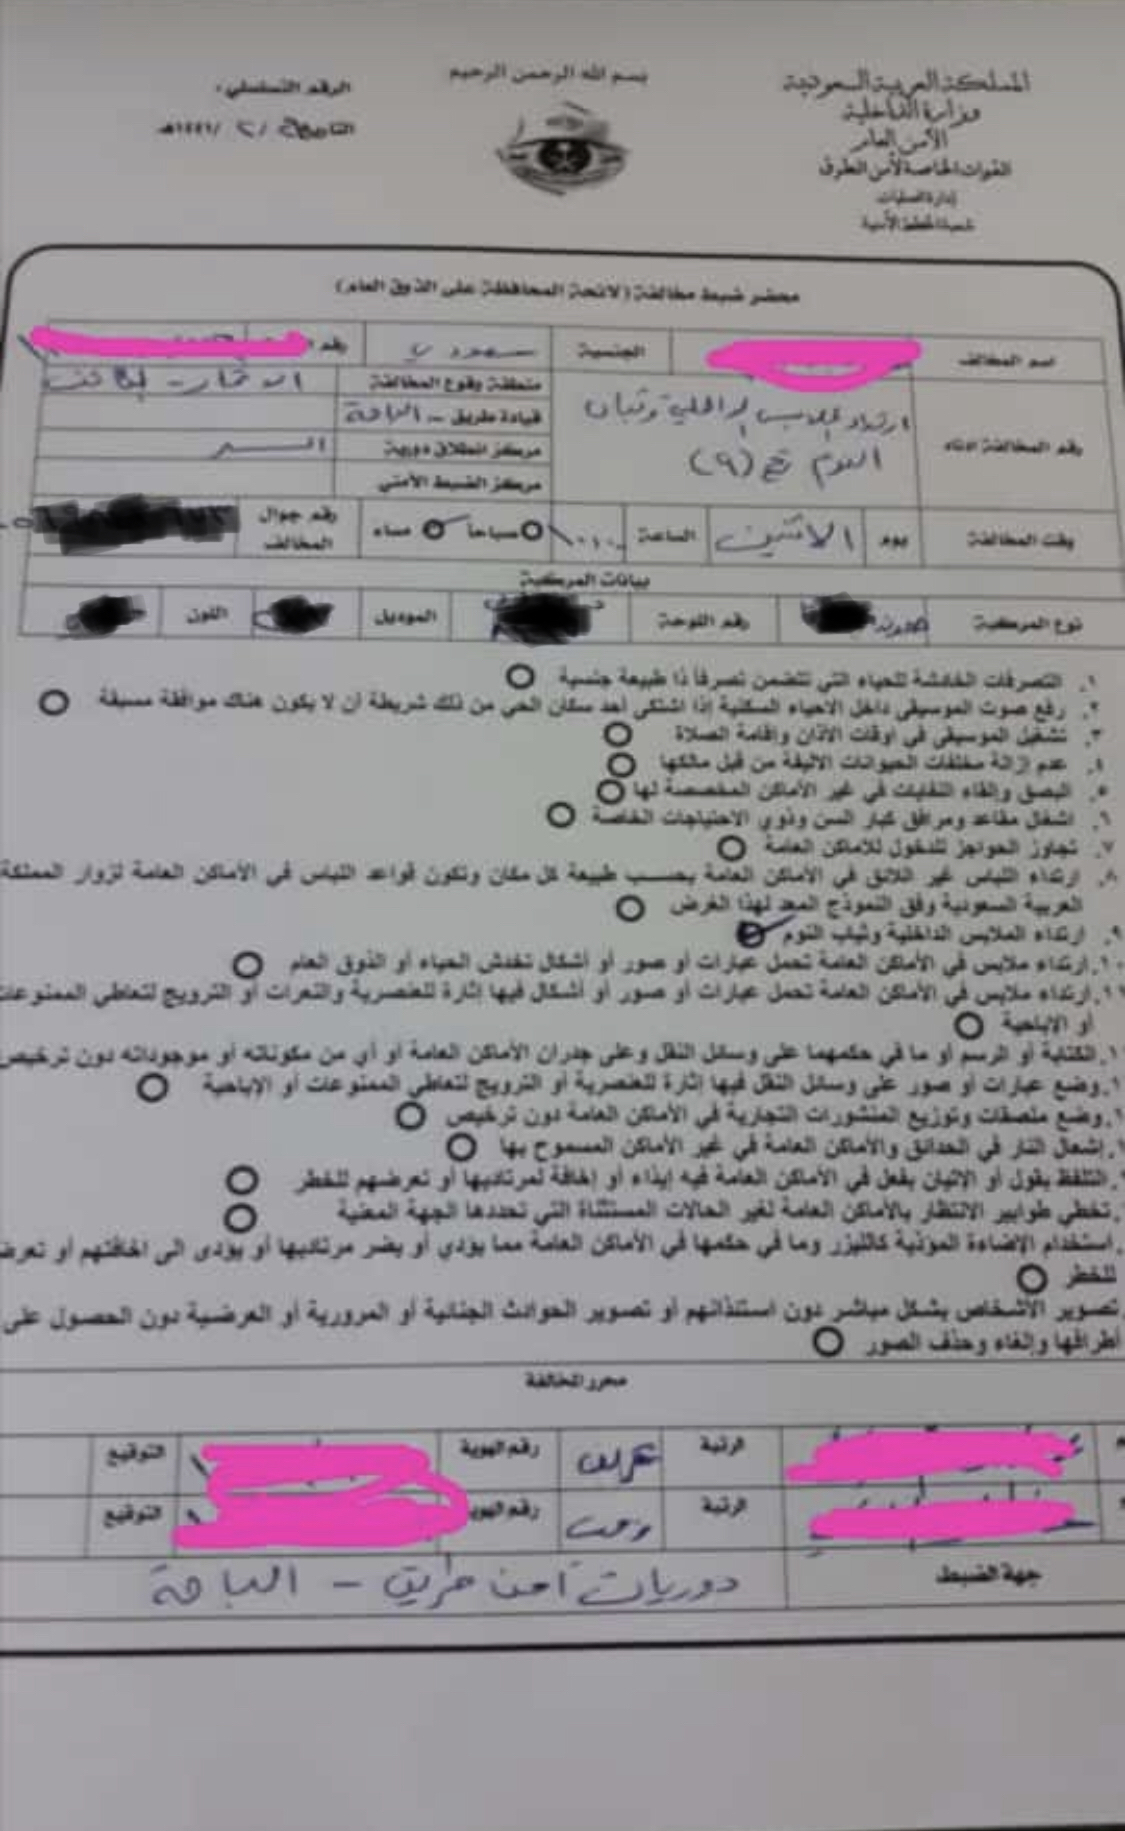 تسجيل أول مخالفة لـ لائحة الذوق العام في الباحة